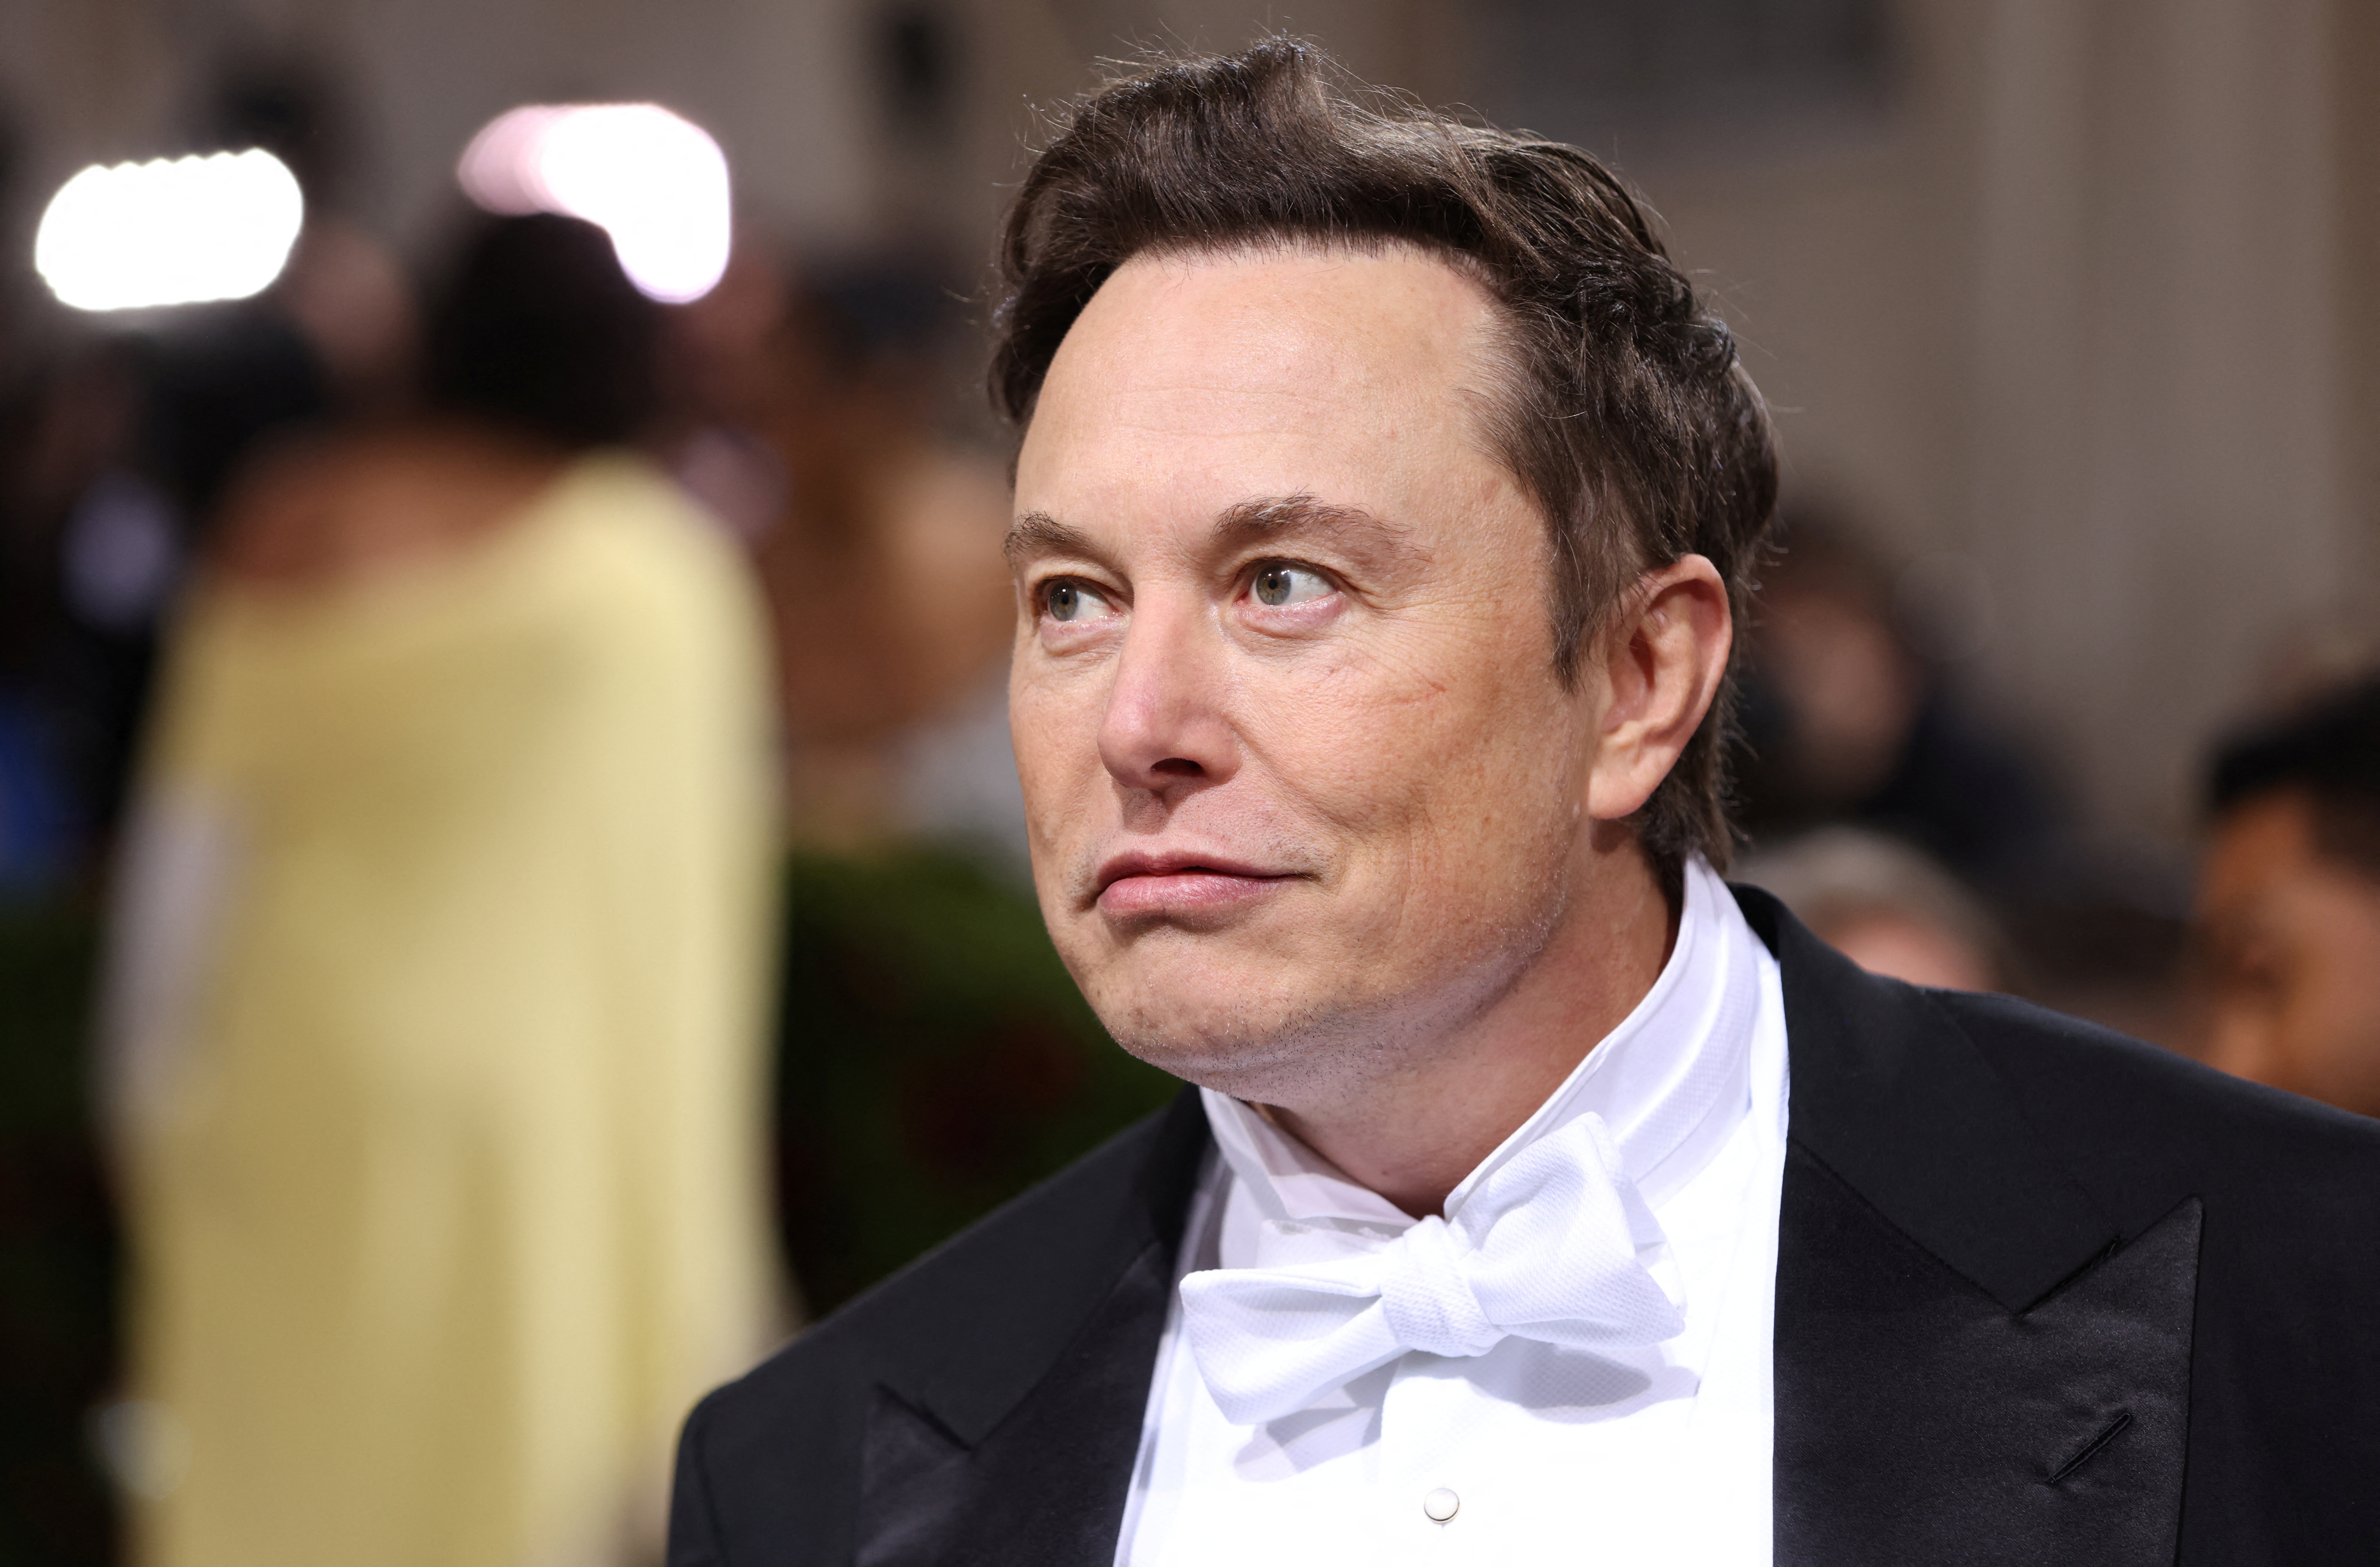 Revelaron que Elon Musk tuvo mellizos con una empleada semanas antes de recibir a un segundo hijo con su pareja Grimes